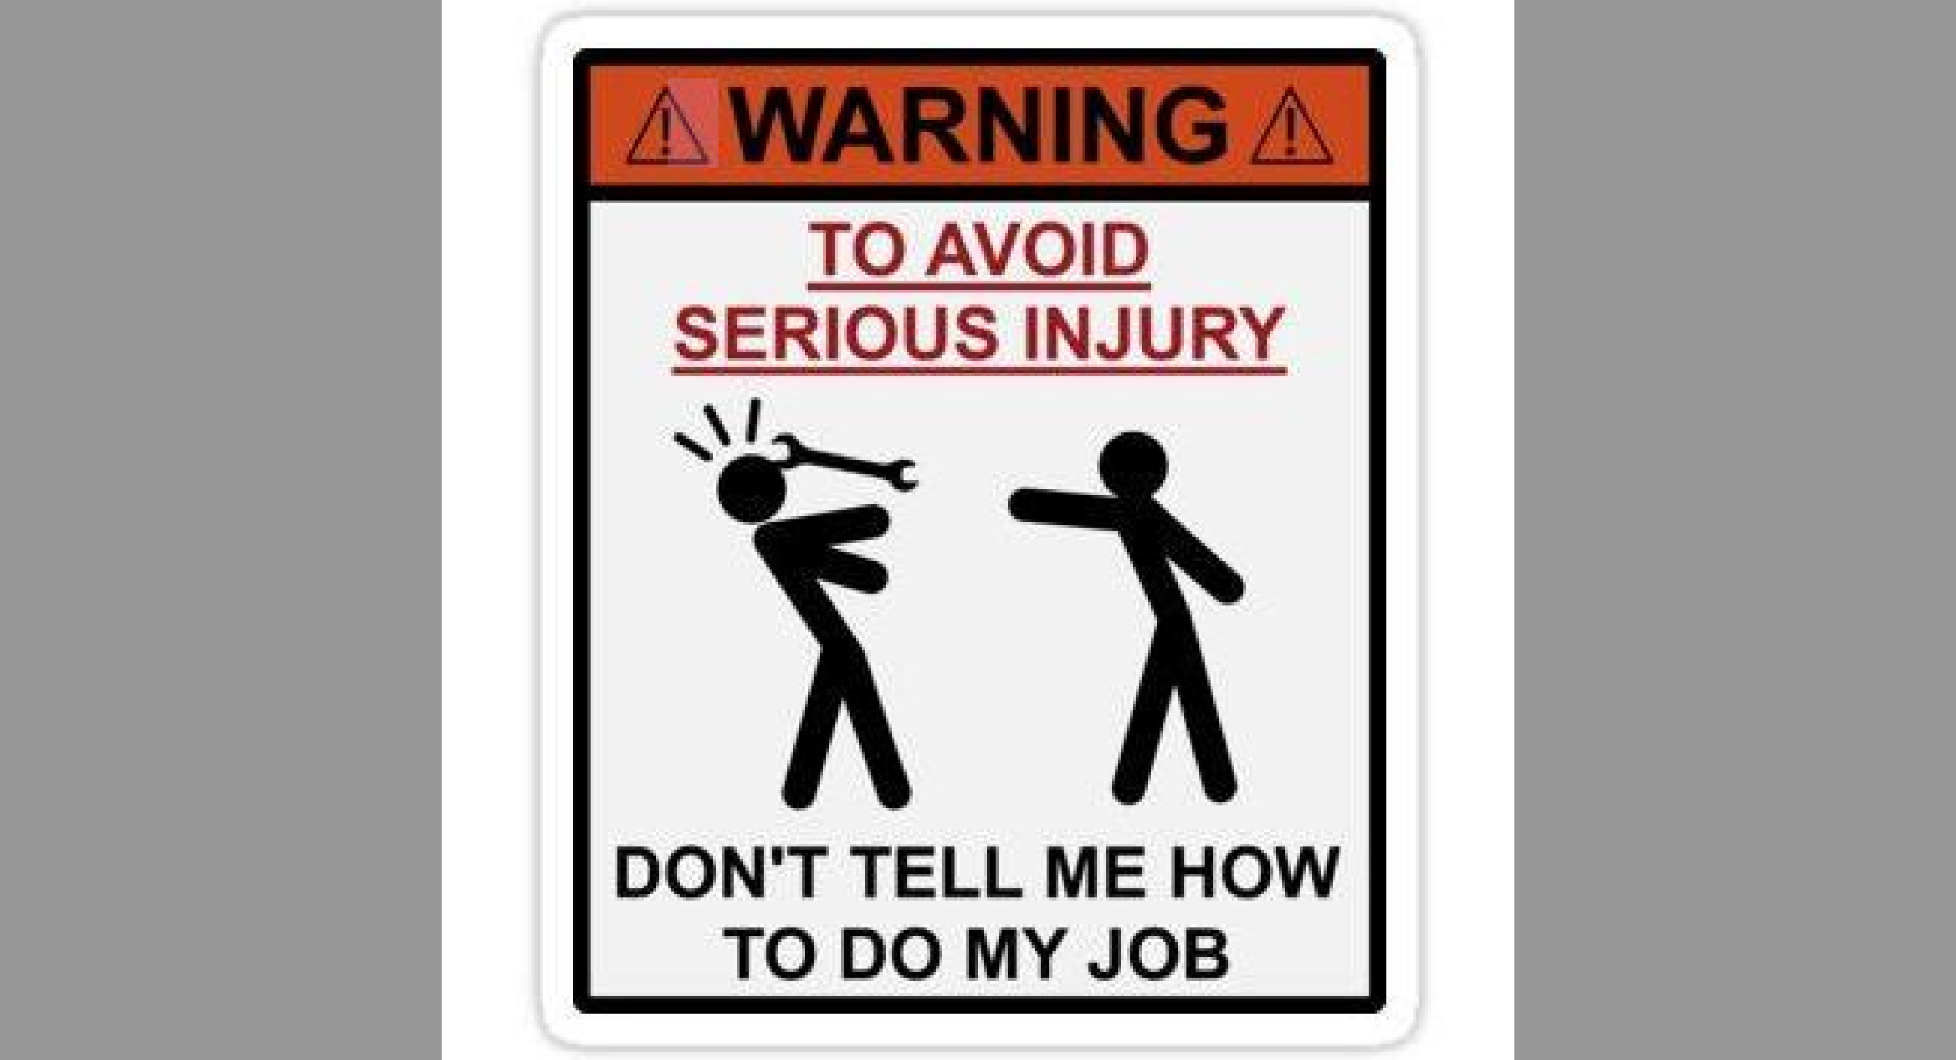 I don t like my job. Don't tell me how to do my job. Warning don't tell me how to do my job. Don't tell me how to do my job poster. To avoid injury don't tell me how to do my job перевод.